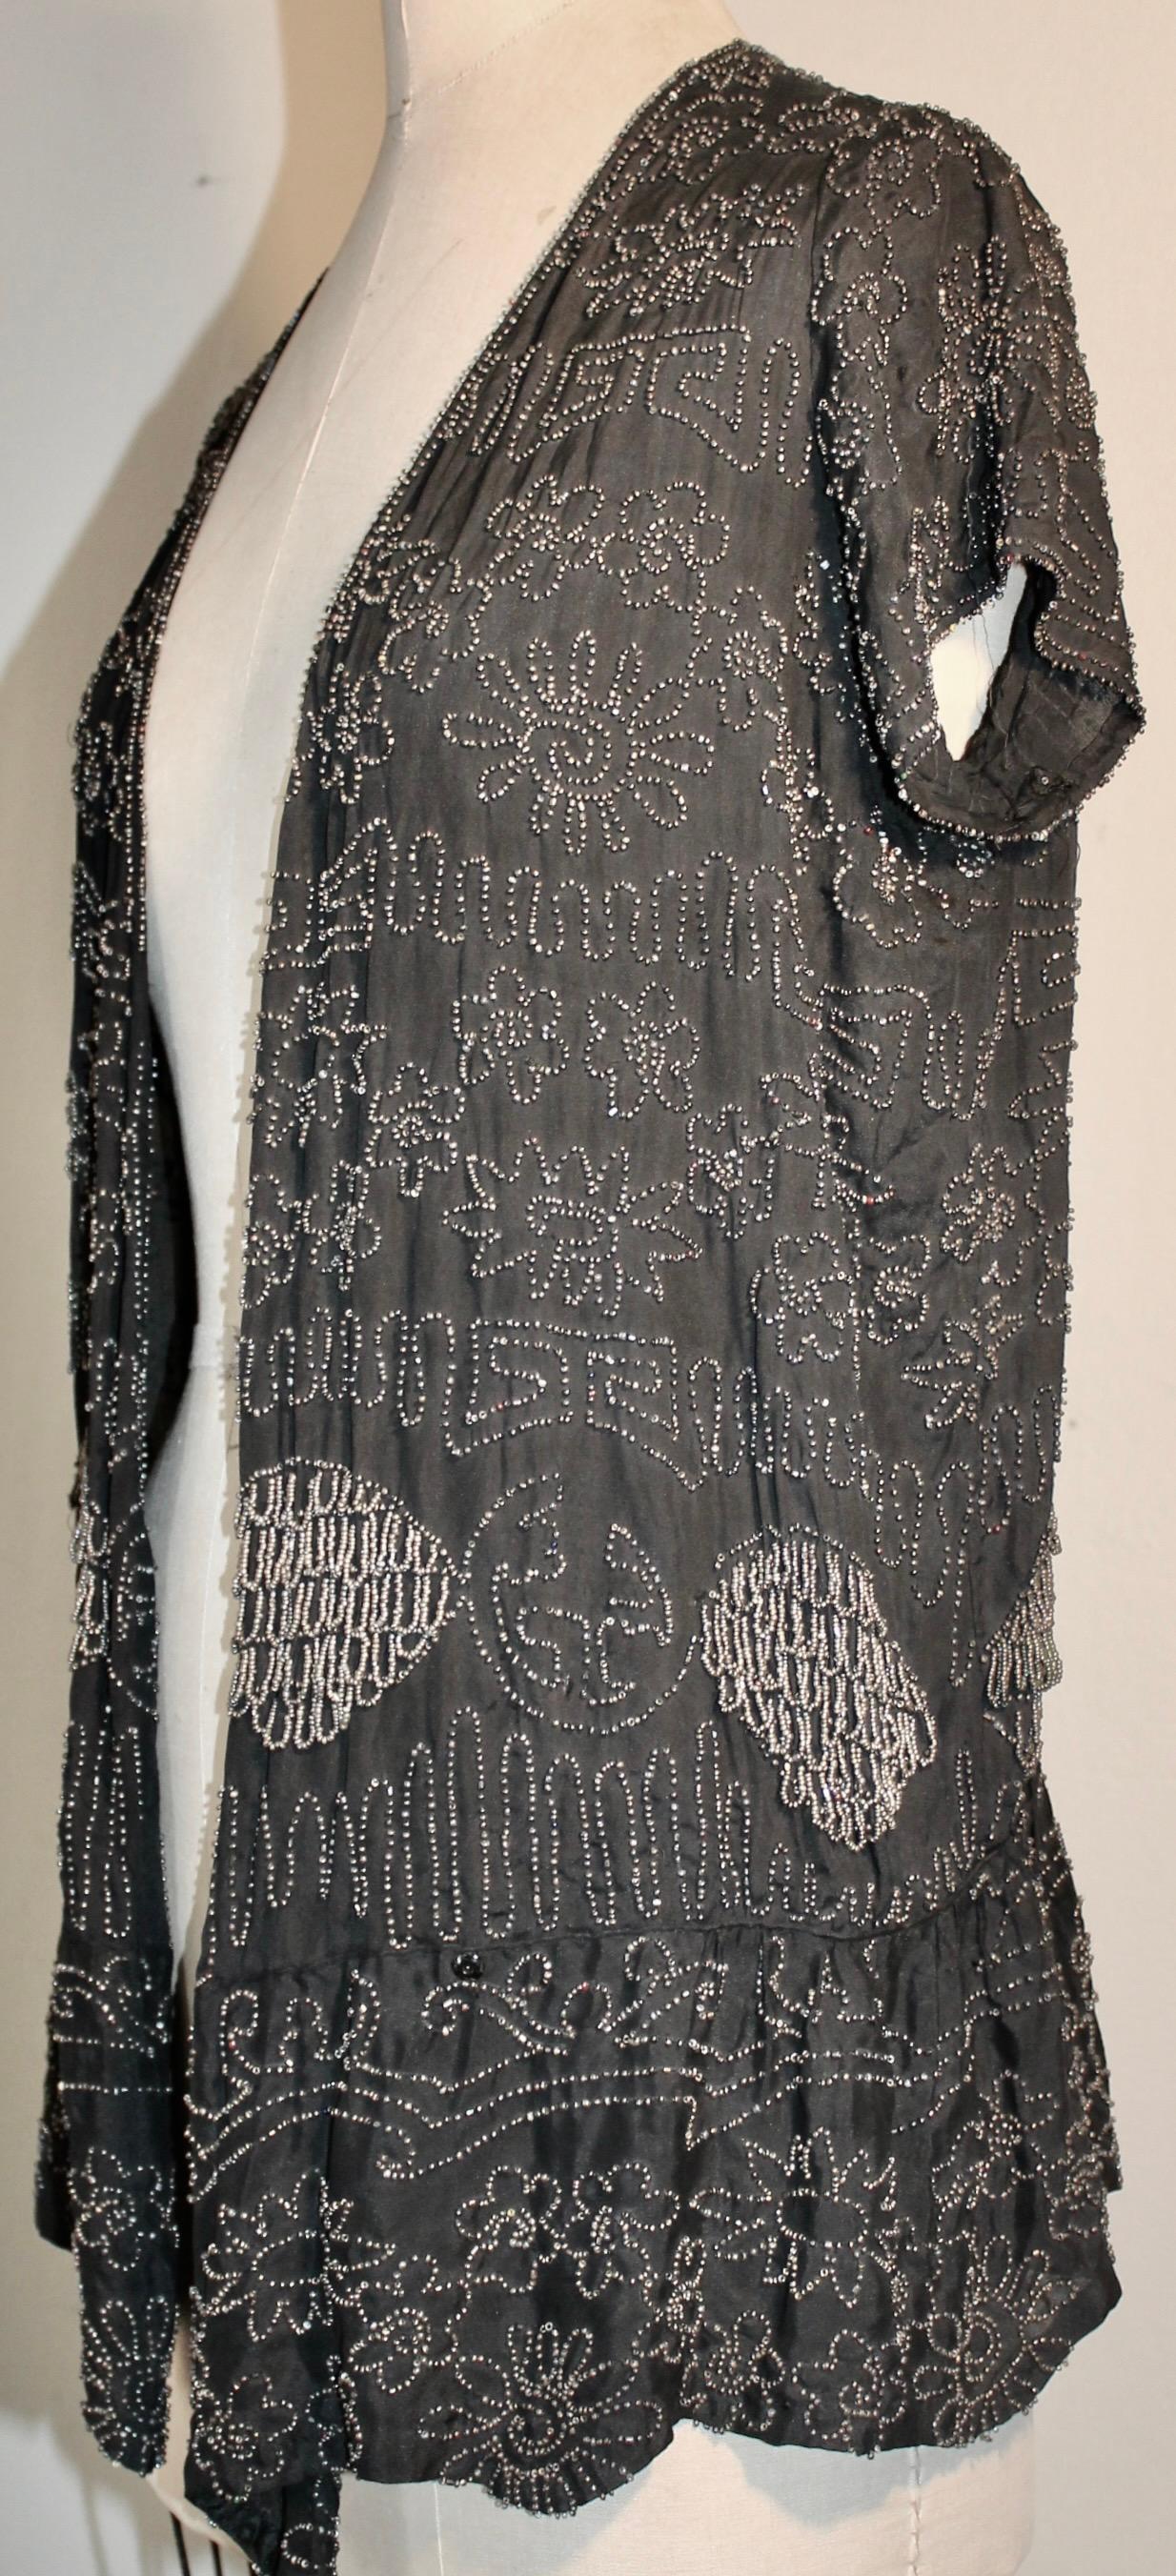 Brodé principalement de perles d'argent dans un design Chinoise, sur un fond noir semi transparent. 